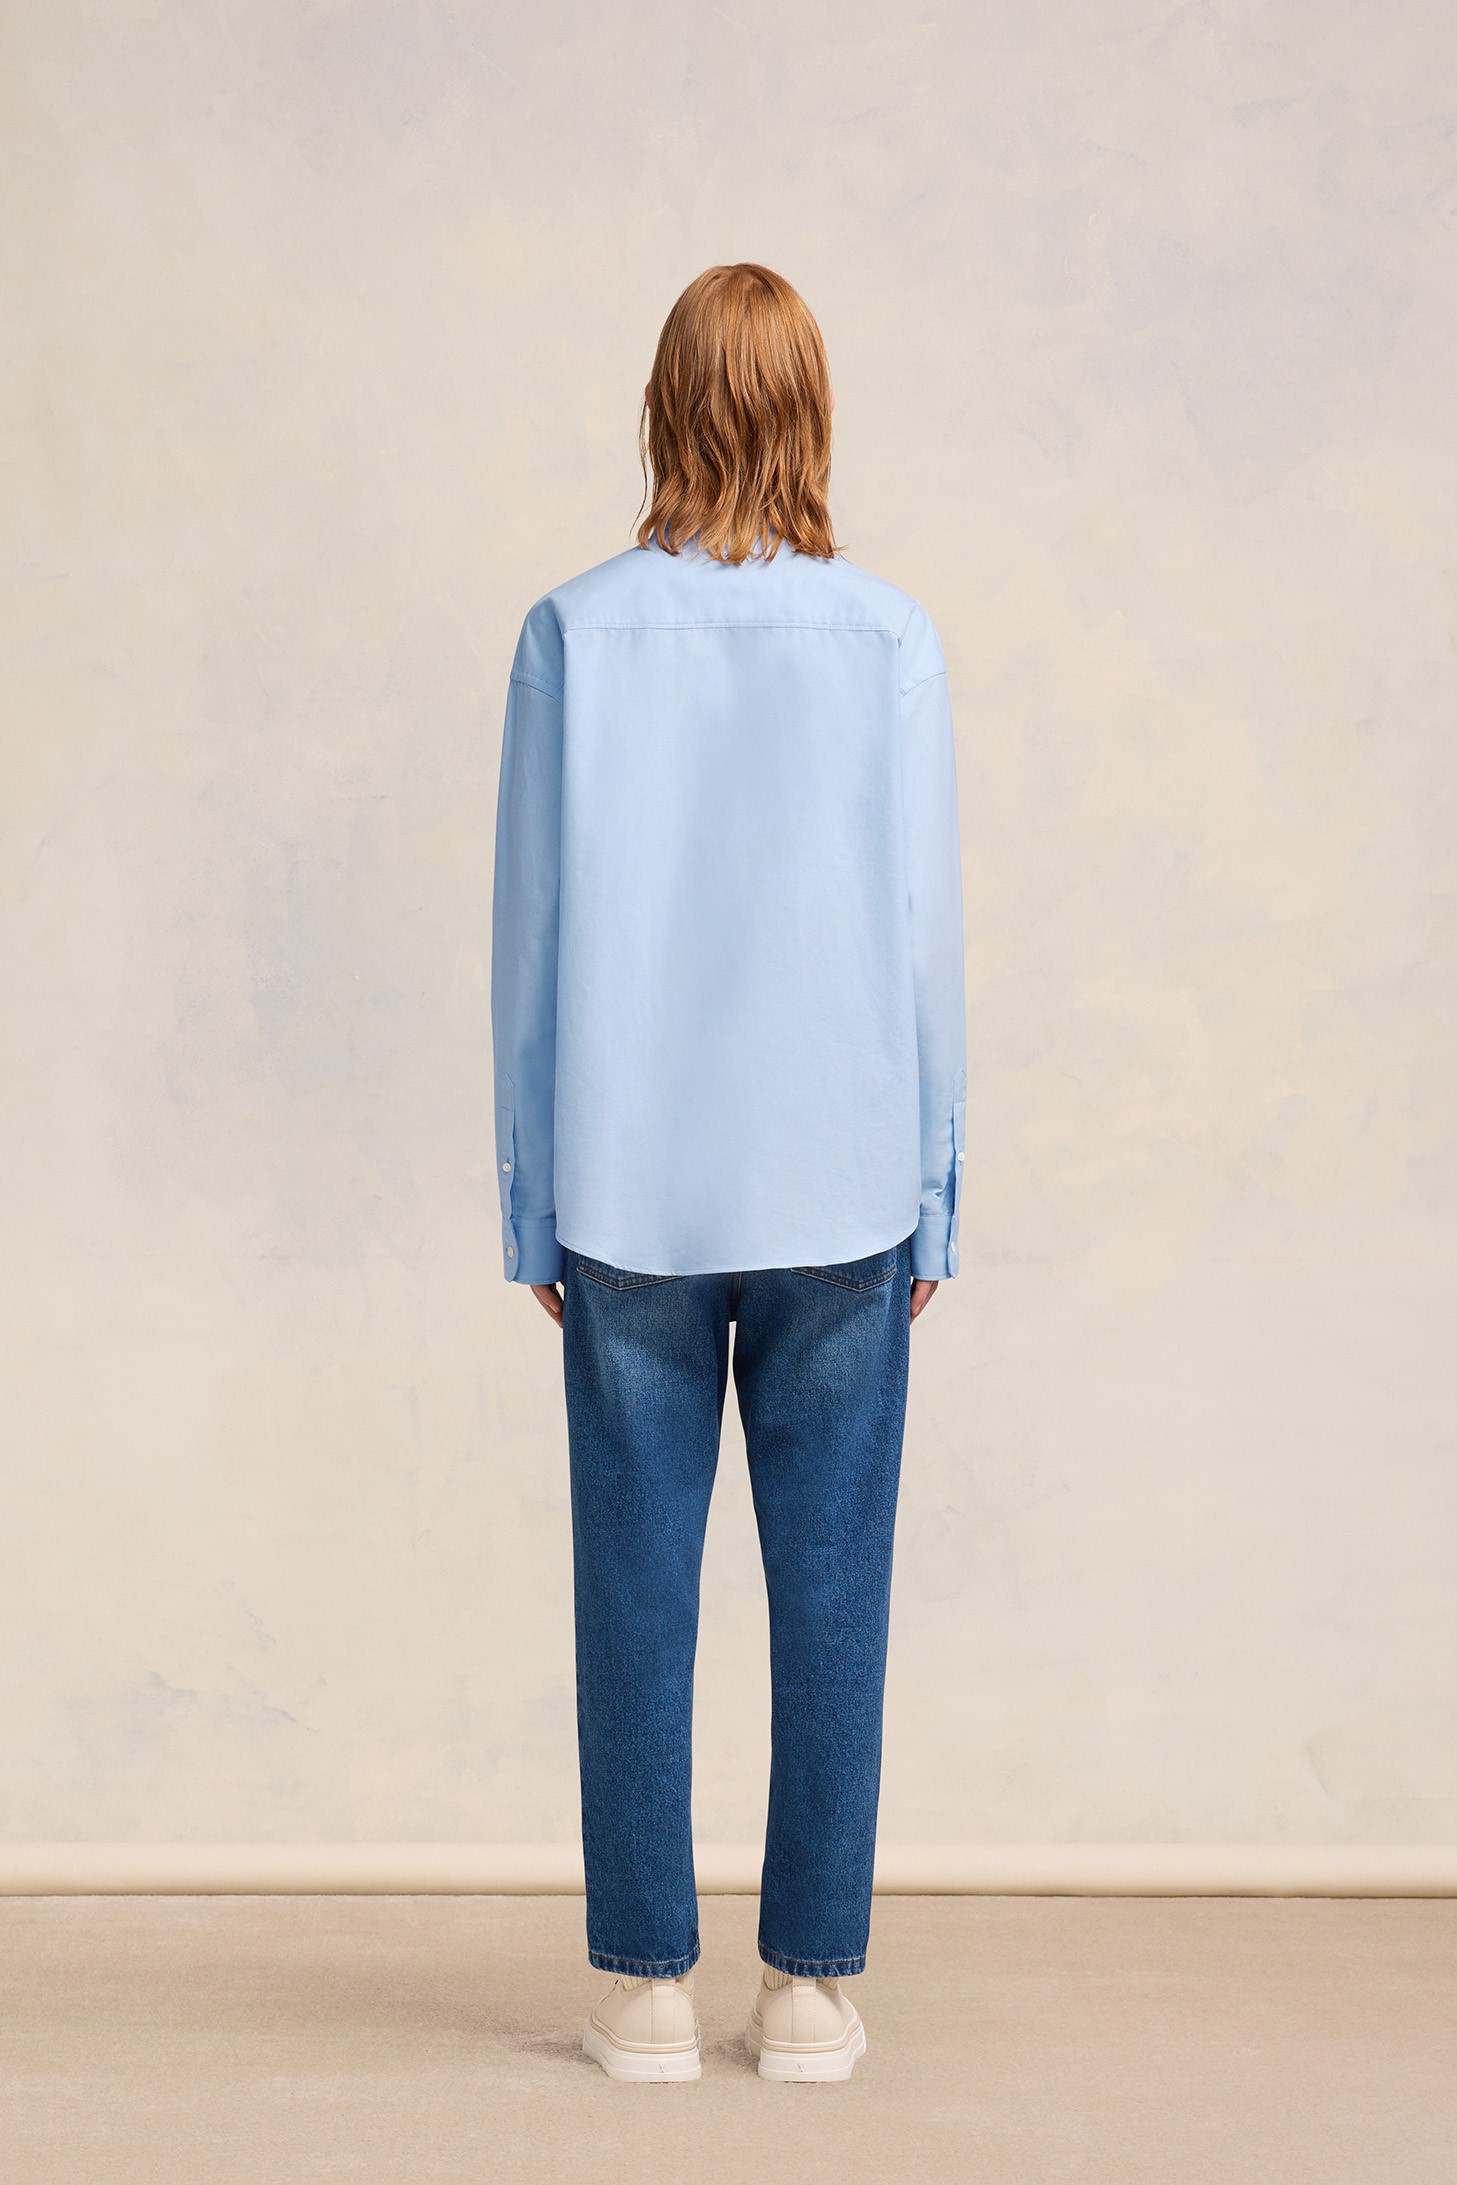 AMI PARIS de Coeur Boxy Fit Shirt in Sky Blue XS